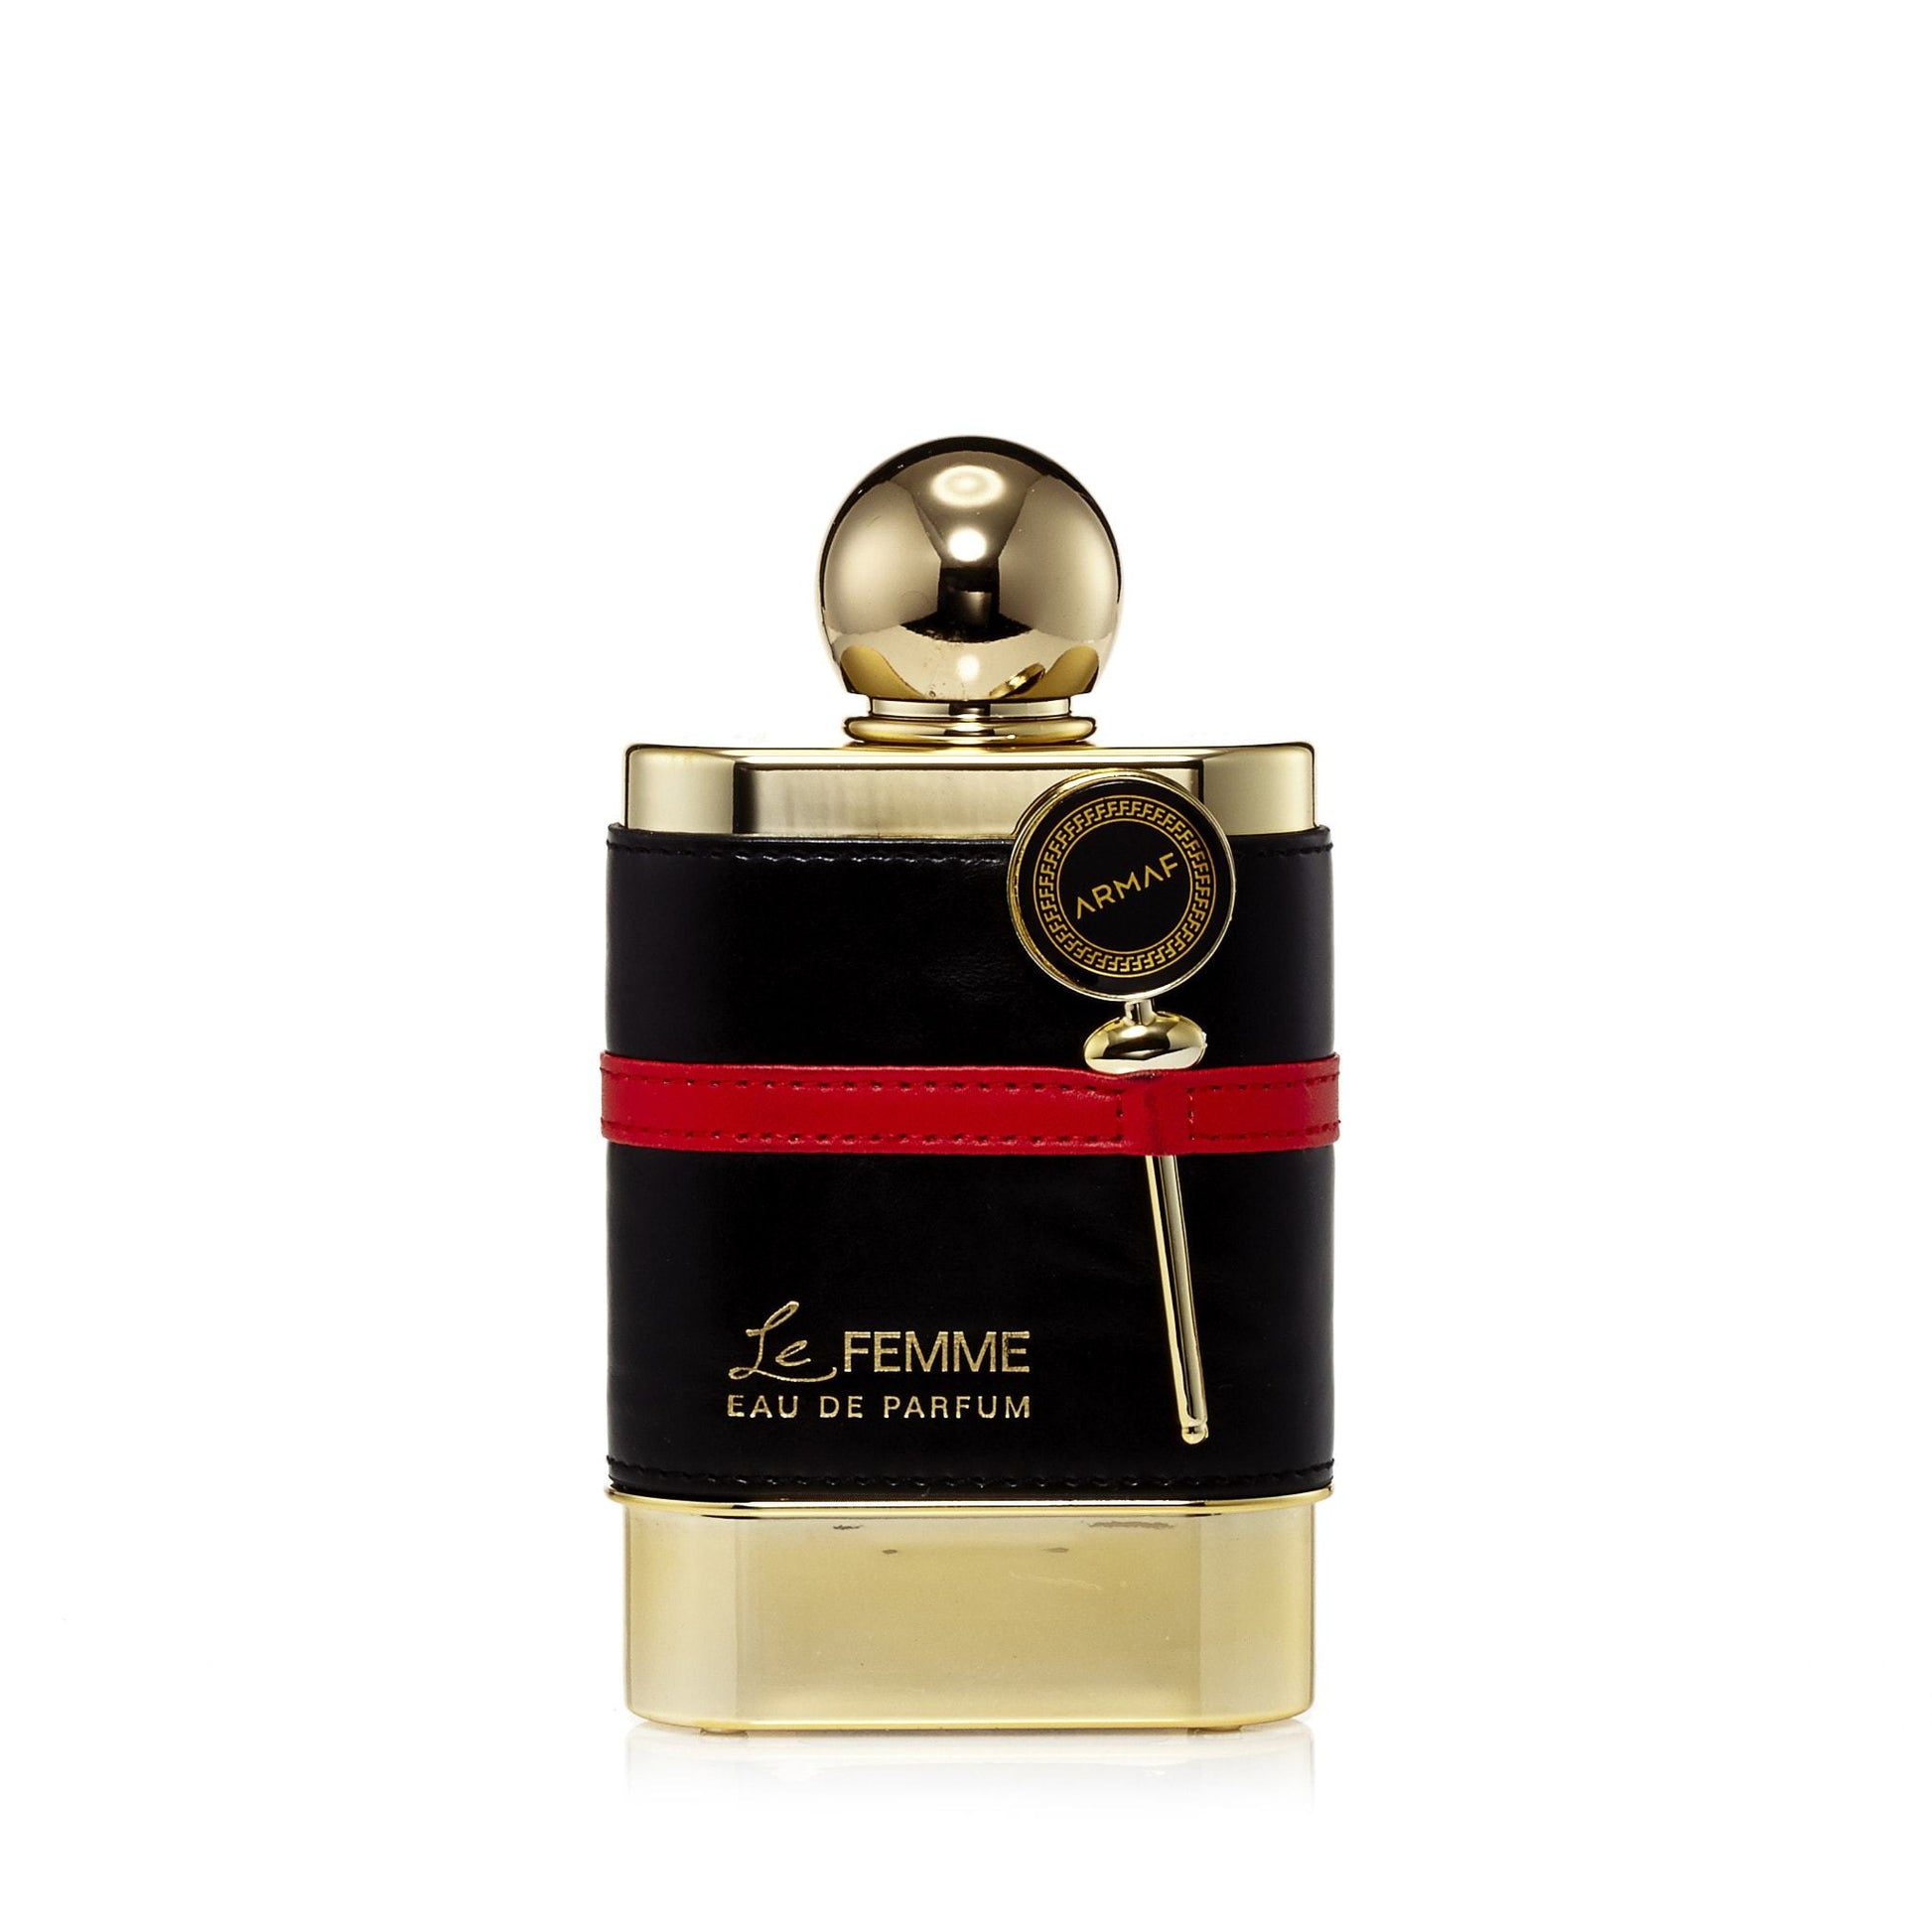 Le Femme Eau de Parfum Spray for Women, Product image 2